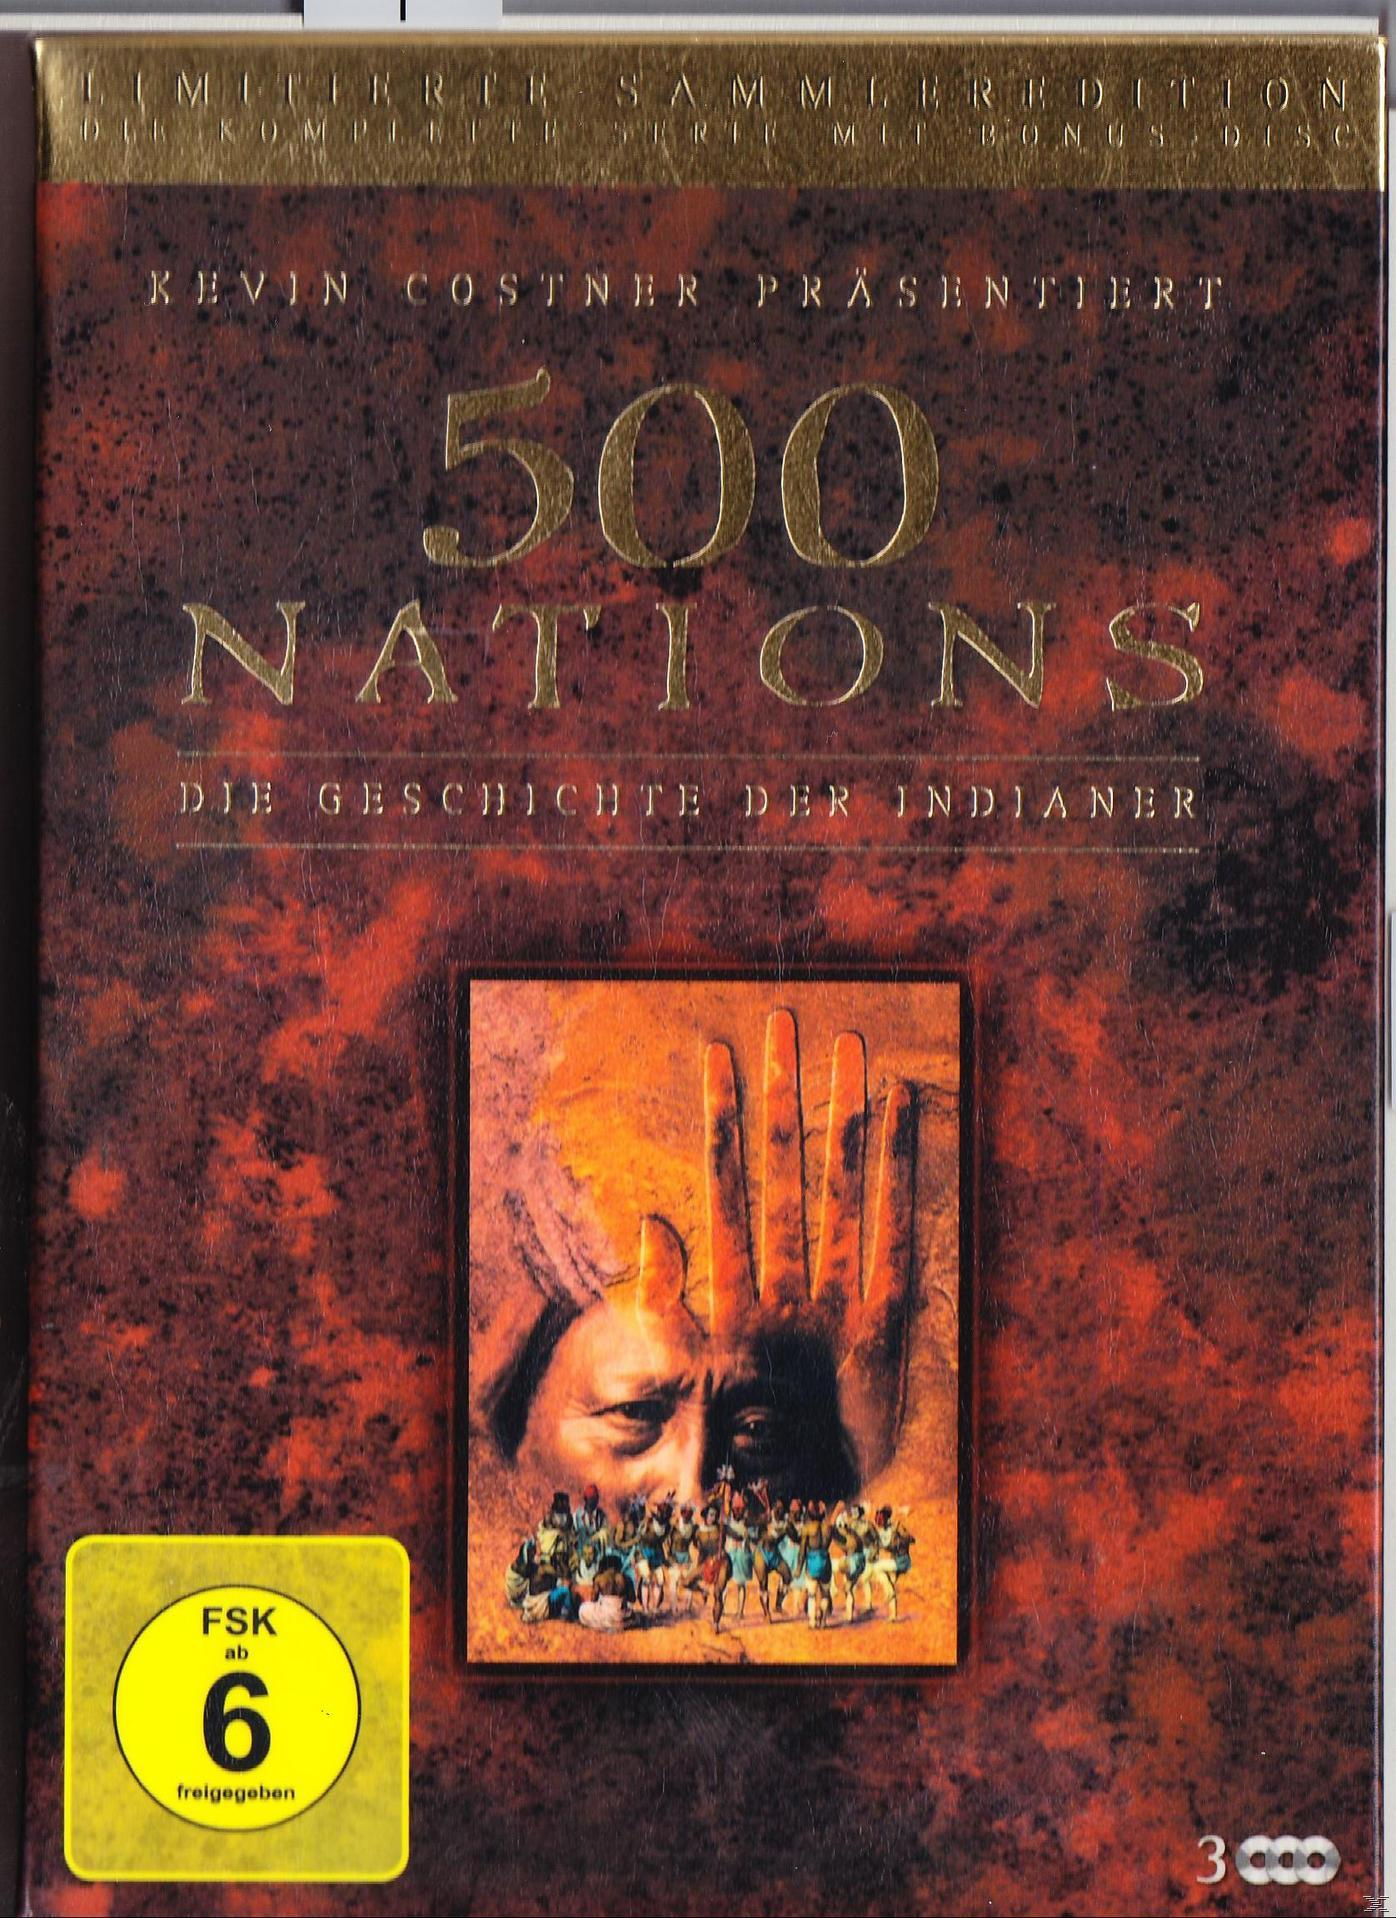 Indianer 500 Geschichte - DVD Nations der Die